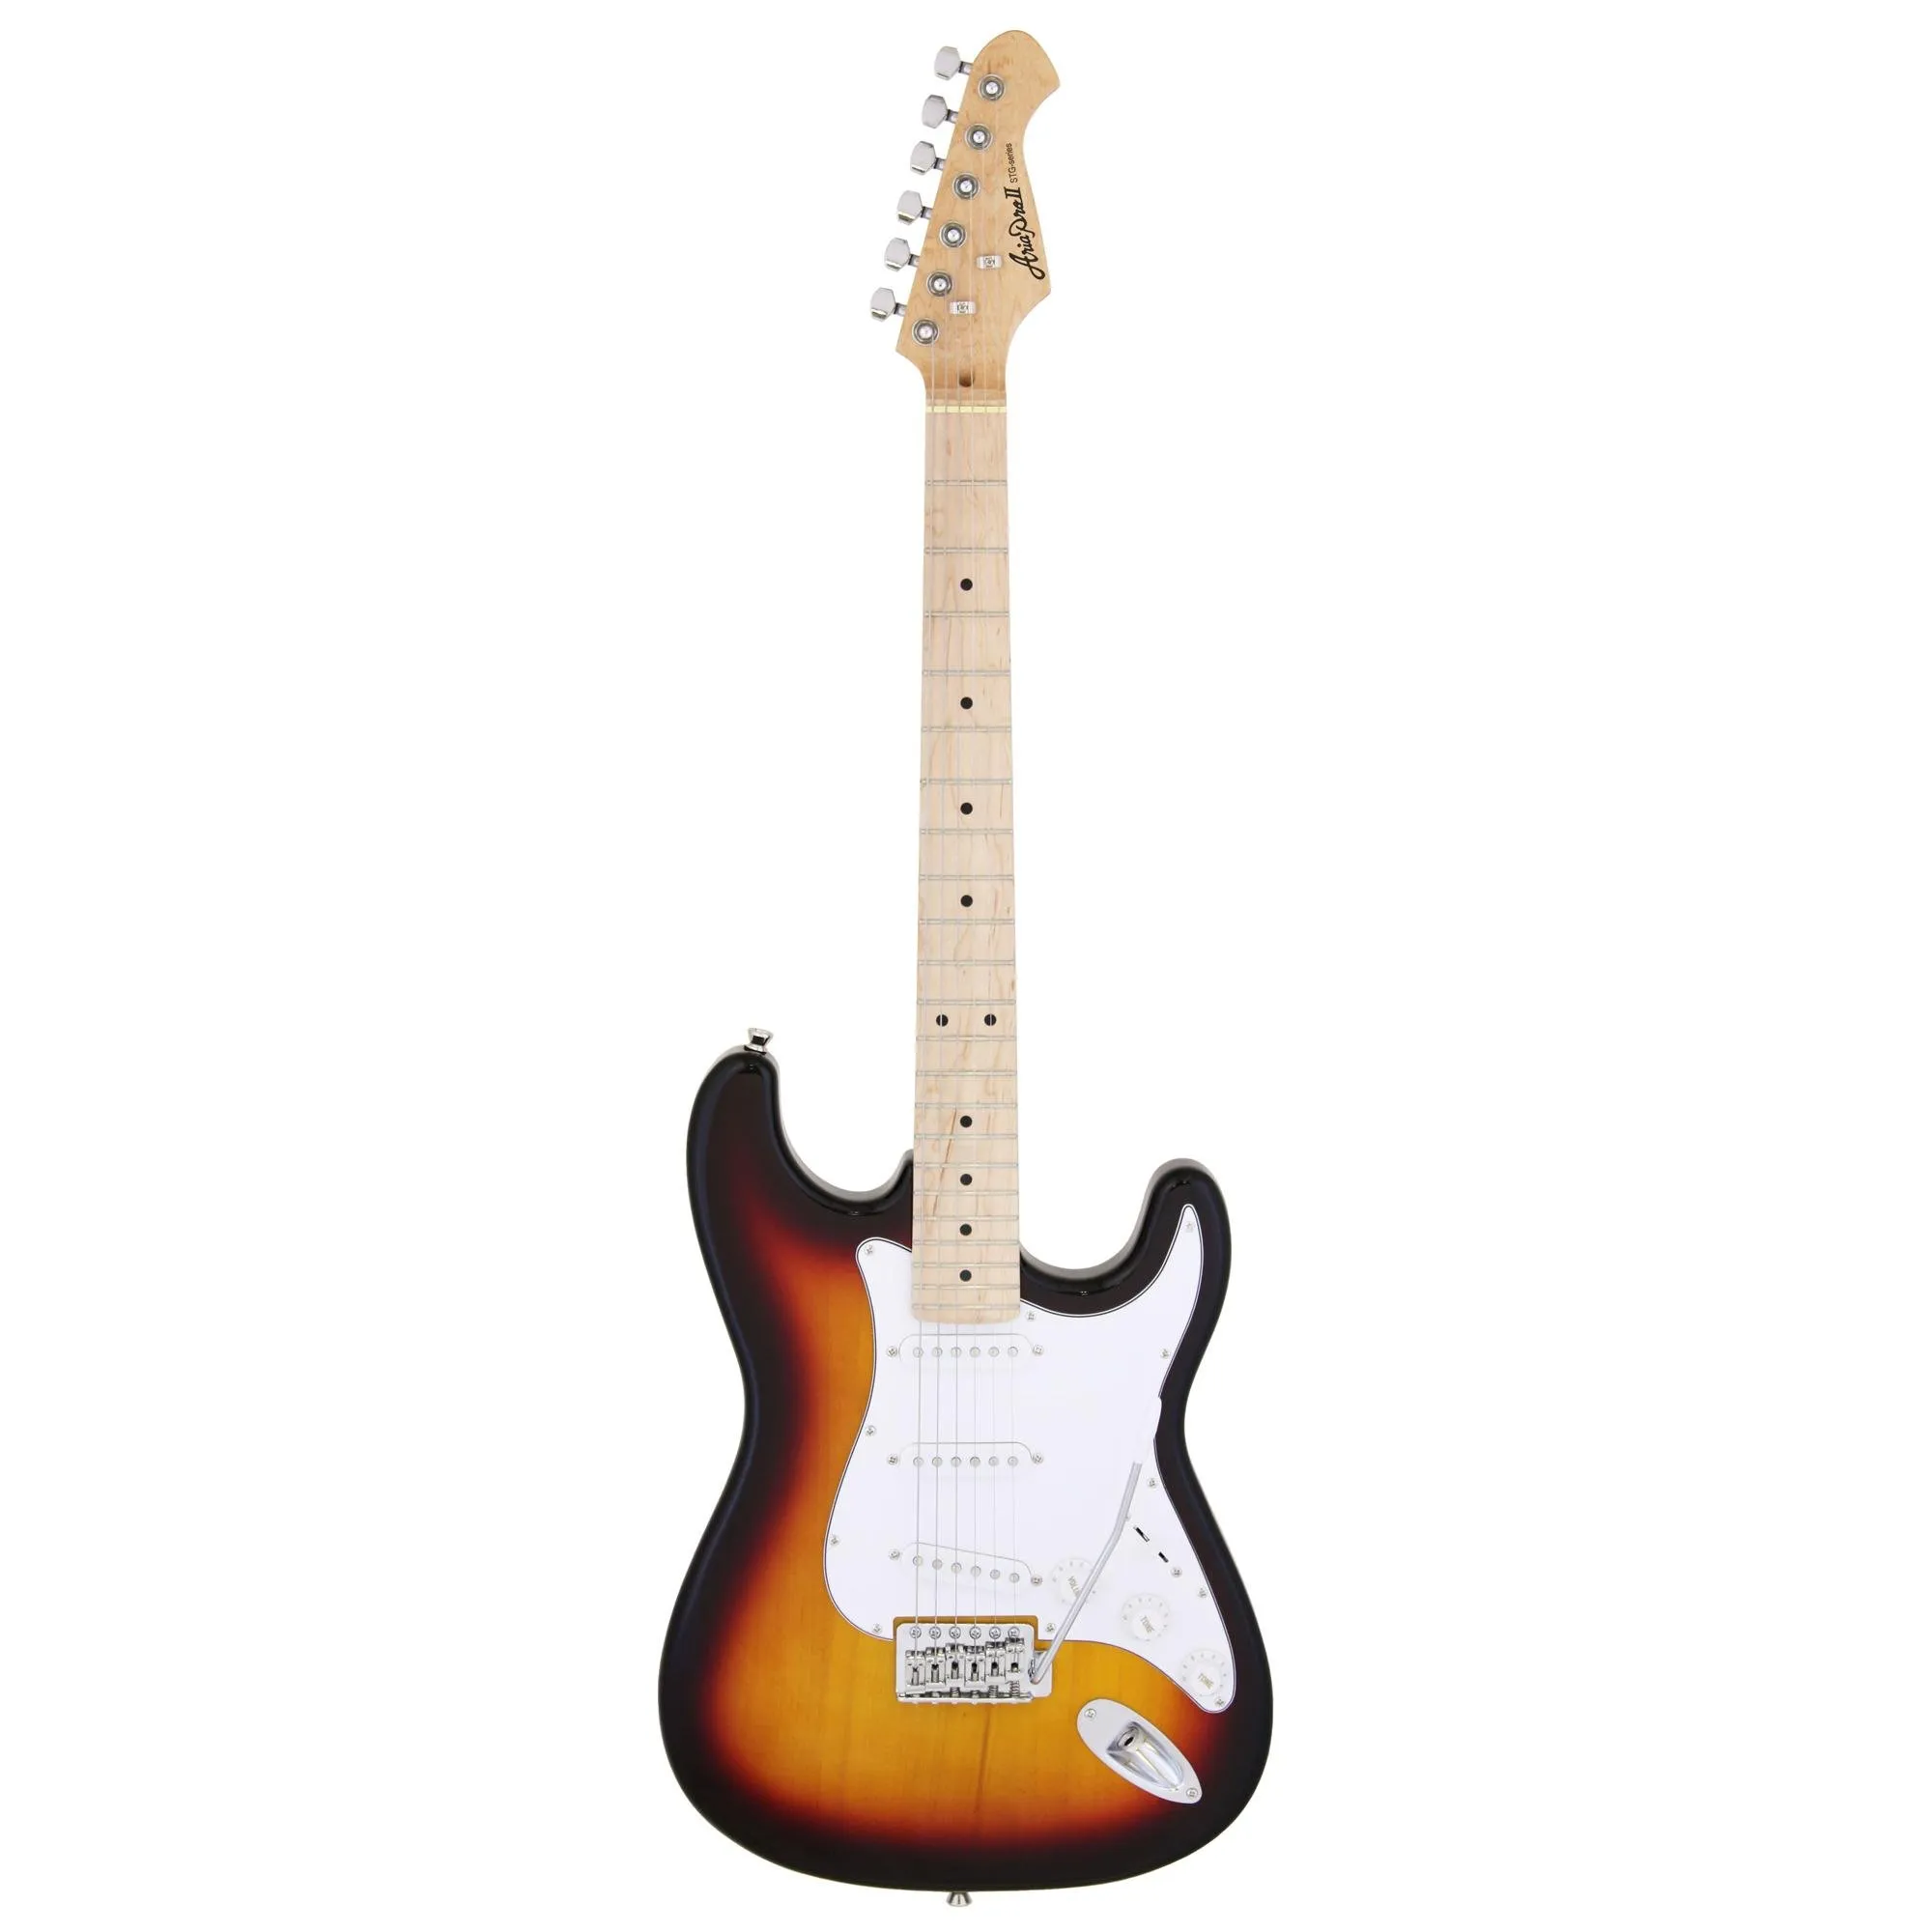 Guitarra Aria Pro II STG-003/M 3 Tone Sunburst por 1.075,00 à vista no boleto/pix ou parcele em até 12x sem juros. Compre na loja Mundomax!